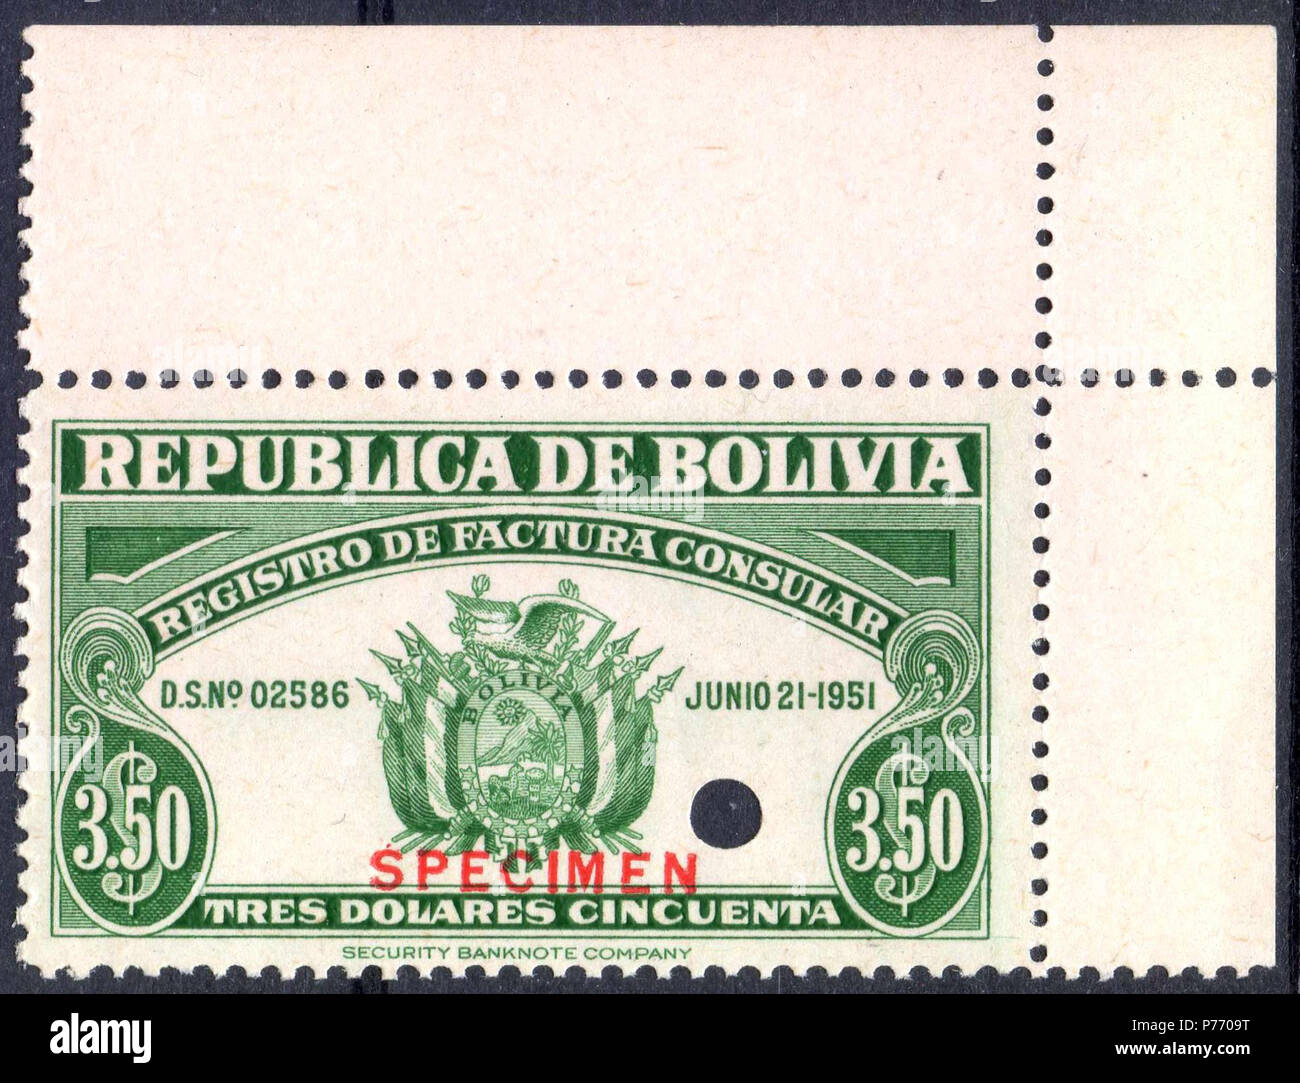 Englisch: 1951 Einnahmen Stempel von Bolivien nach konsularischen Rechnungsgebühren eingeprägten Muster. 1951 oder früher 1 1951 Muster einnahmen Stempel Bolivien Stockfoto